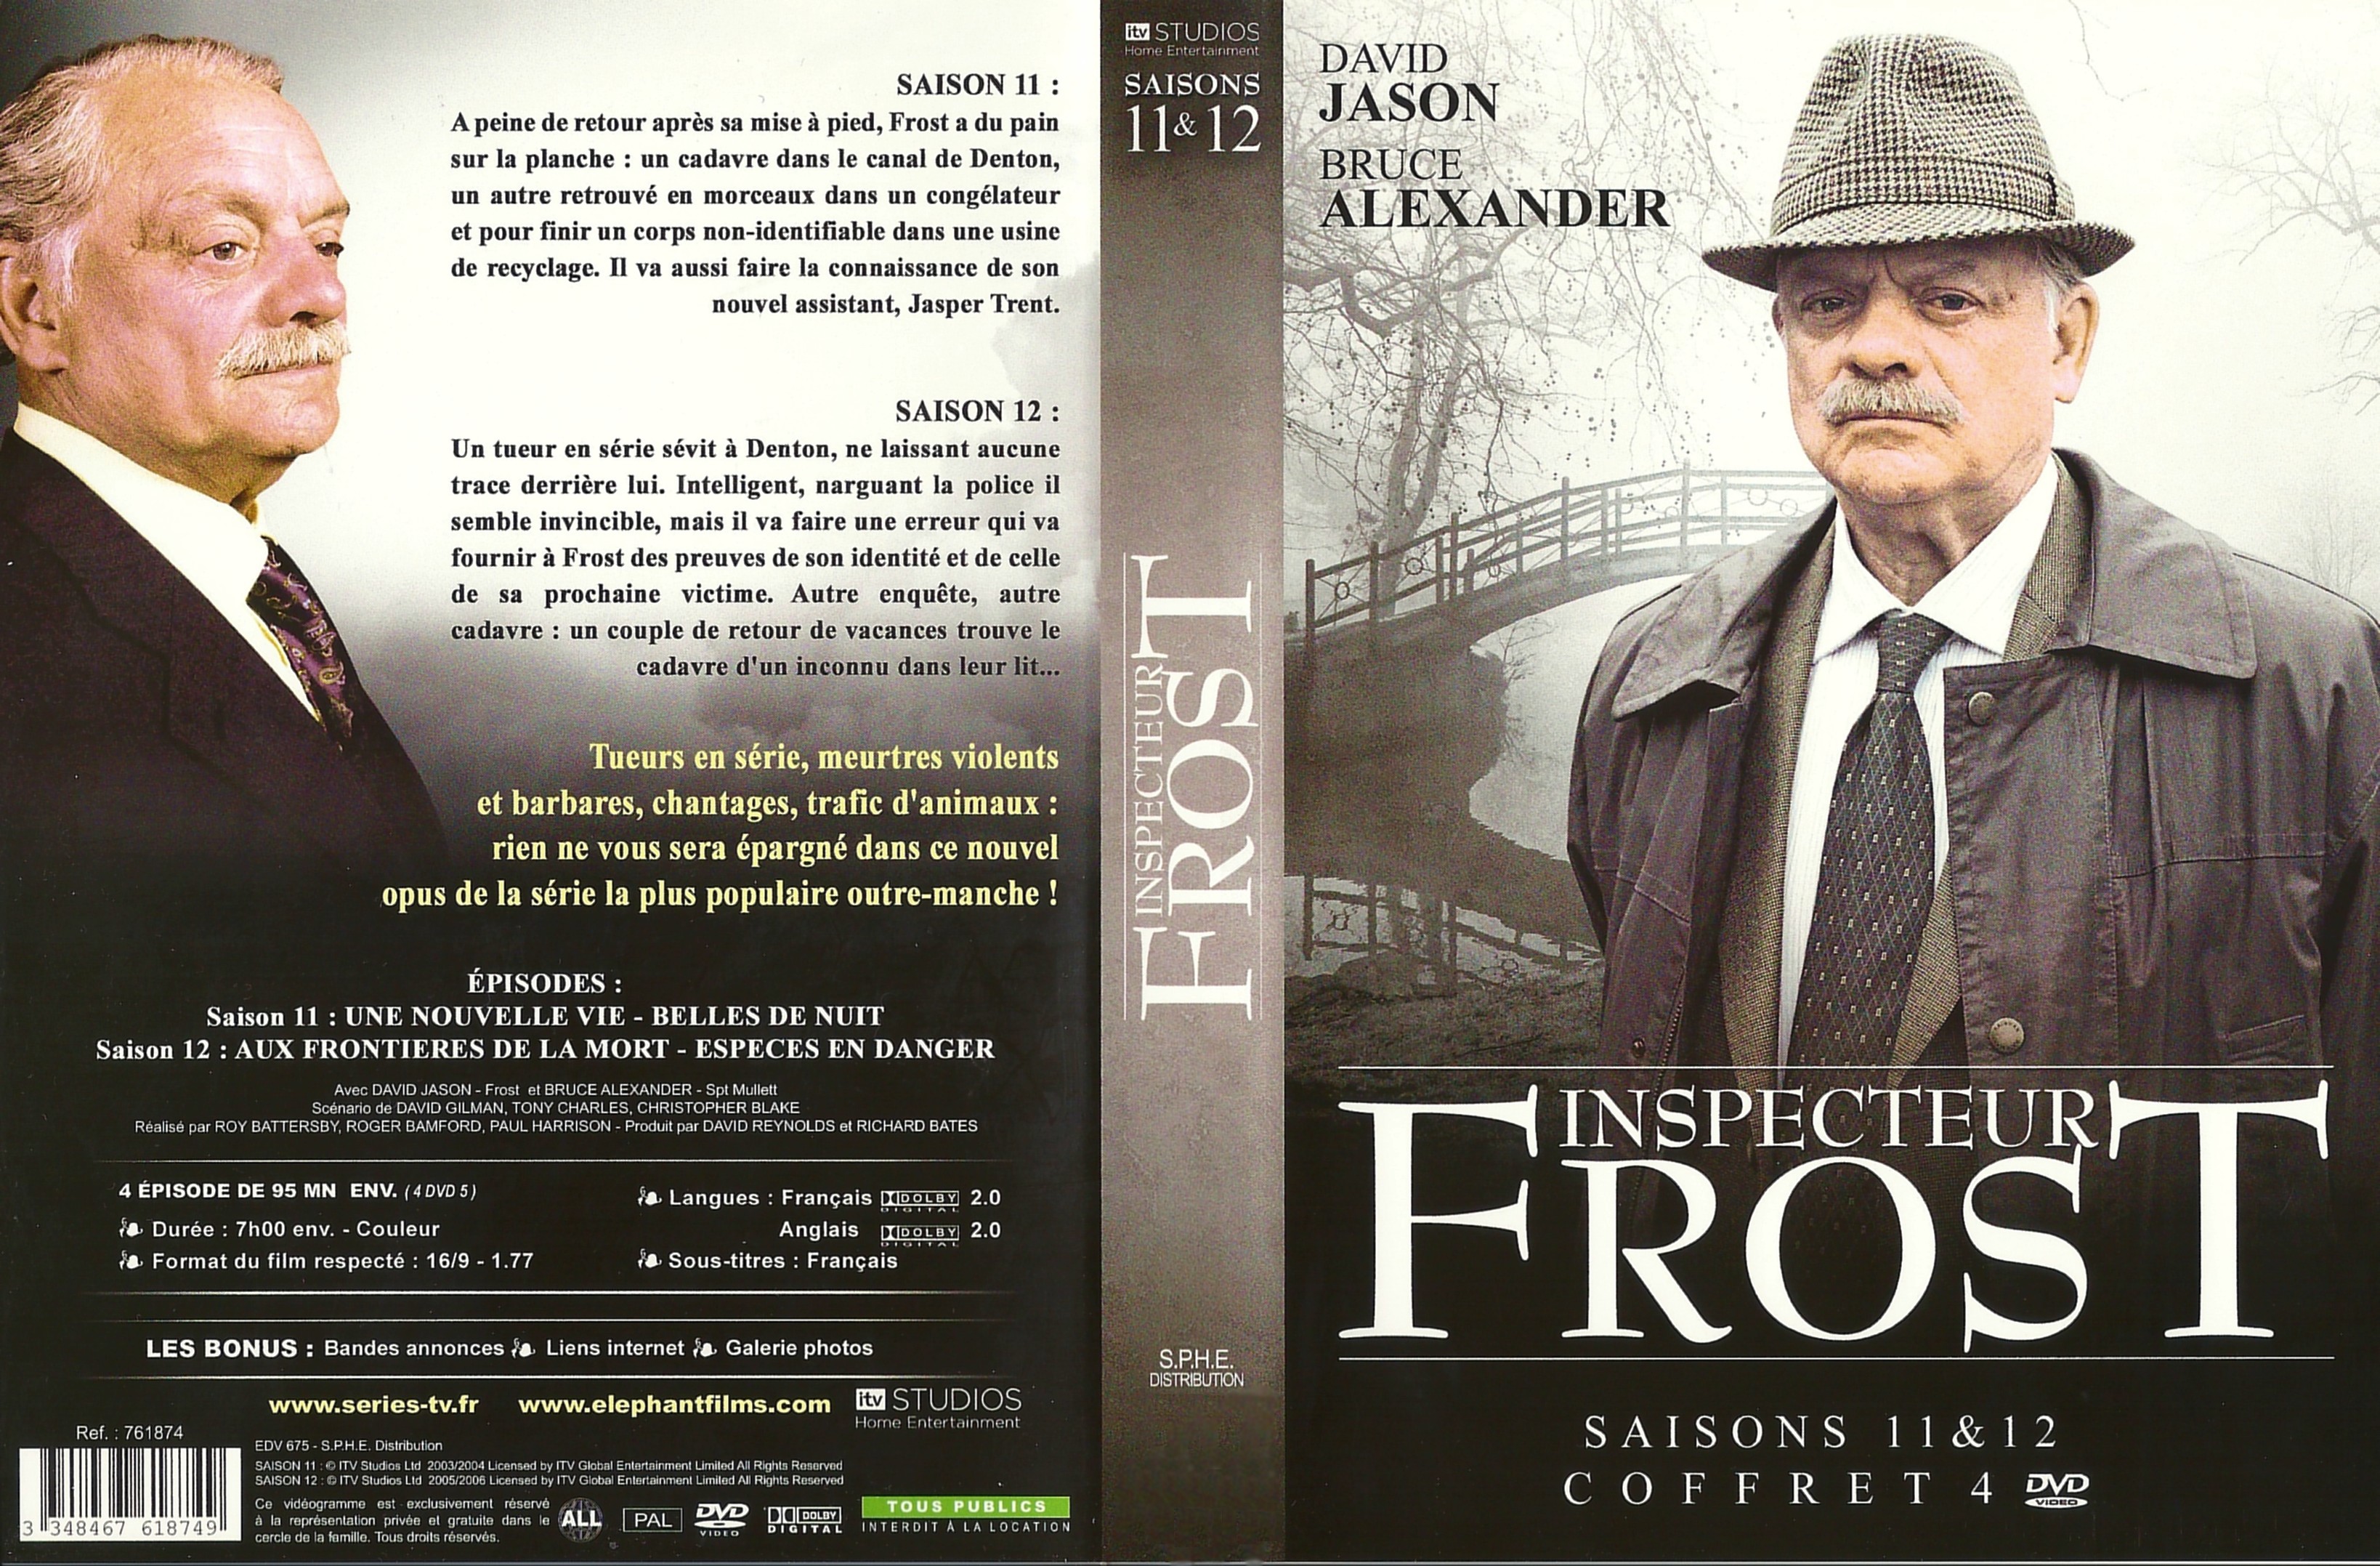 Jaquette DVD Inspecteur Frost Saison 11 et 12